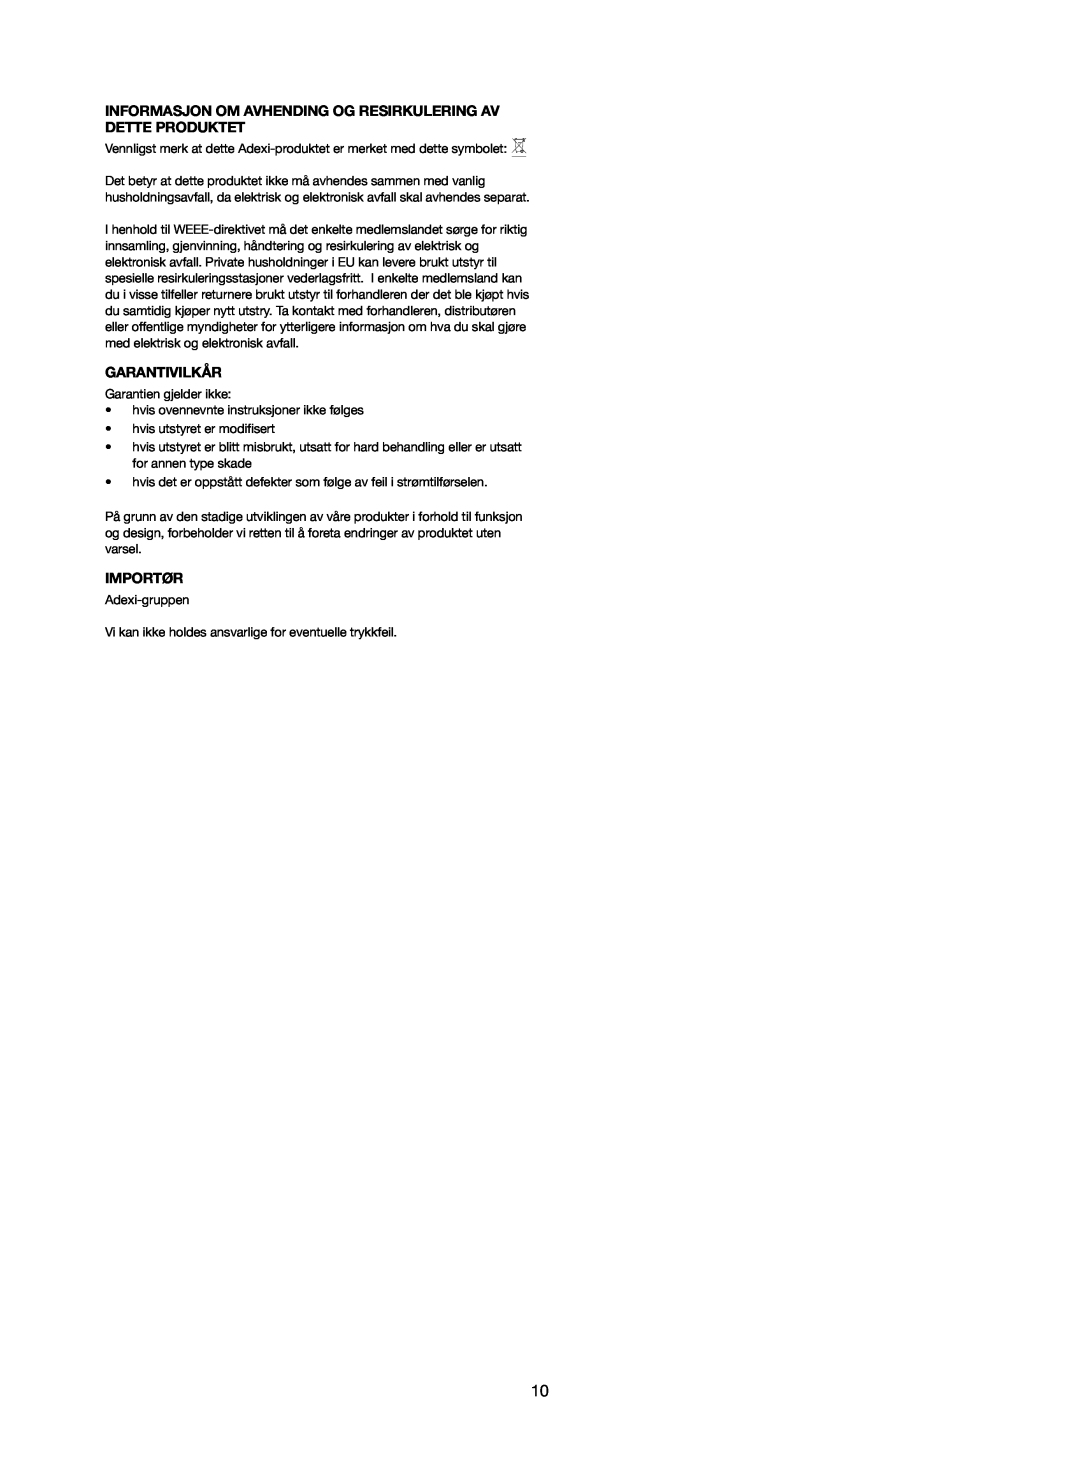 Melissa 251-005 manual Informasjon Om Avhending Og Resirkulering Av Dette Produktet, Garantivilkår, Importør 